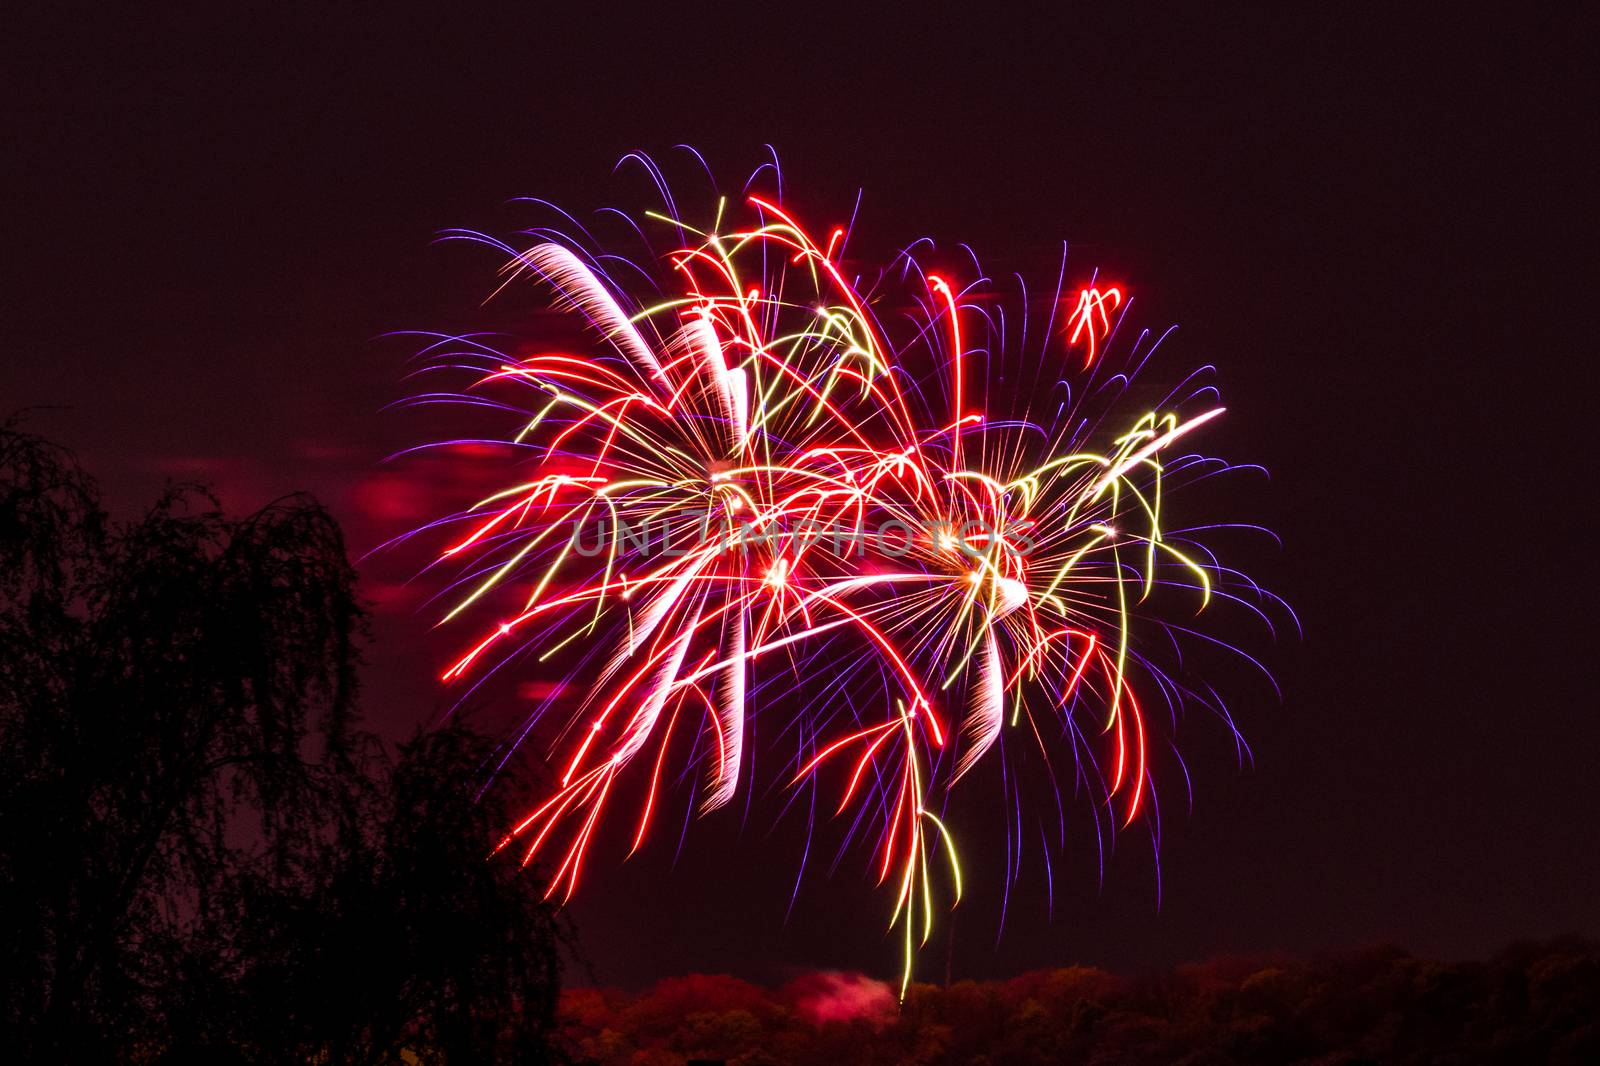 Firework fireworks celebration red purple orange blasts by MXW_Stock